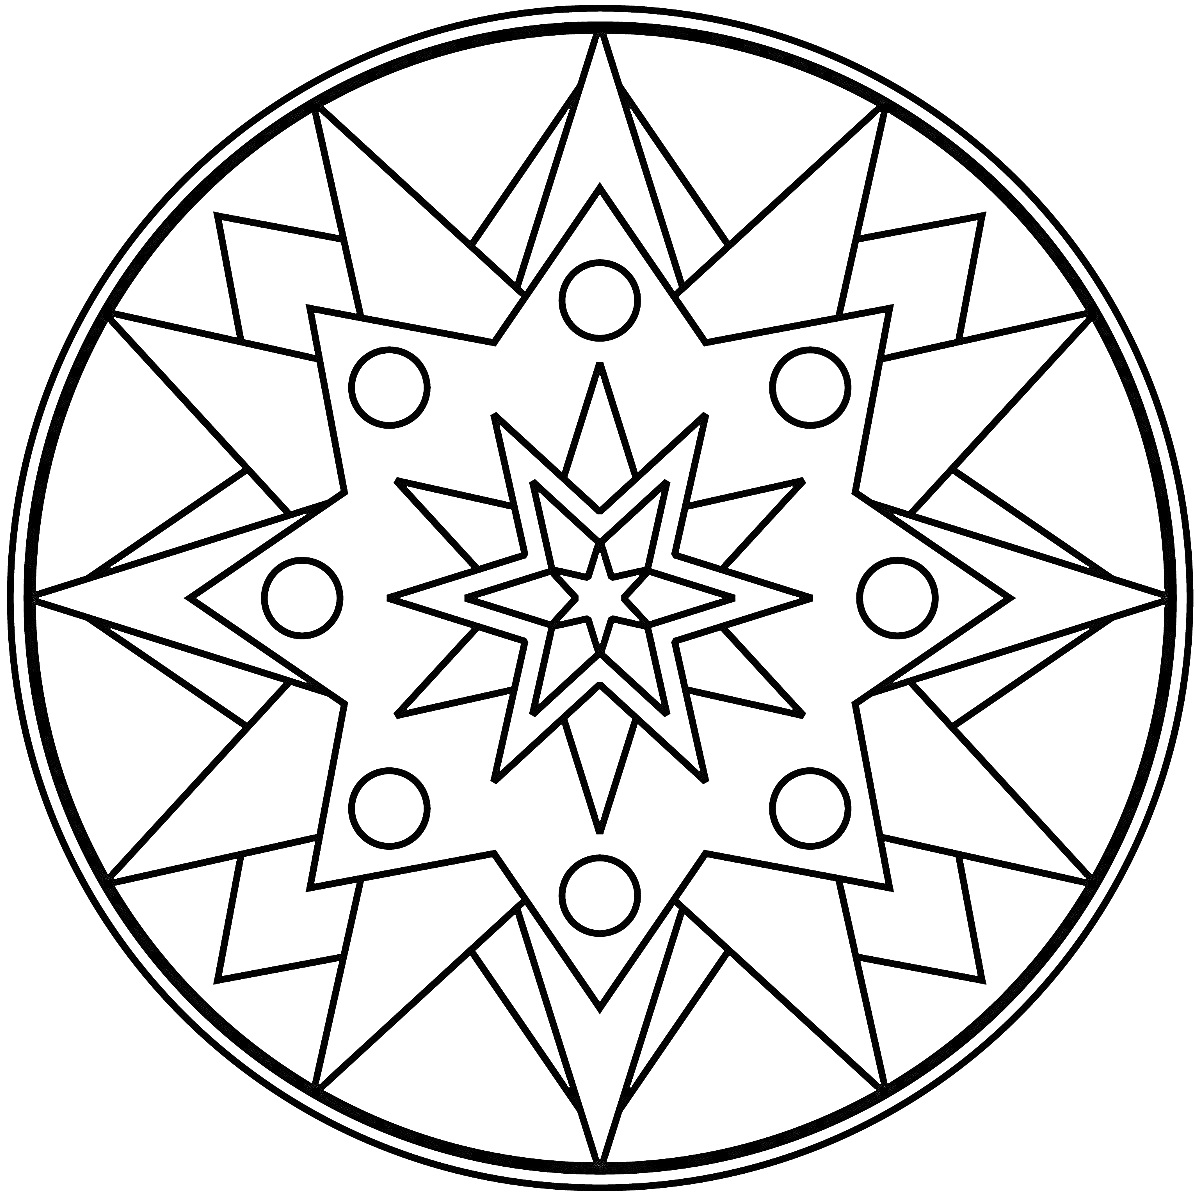 Мандала с восьмиконечной звездой, окруженной треугольниками и кружками